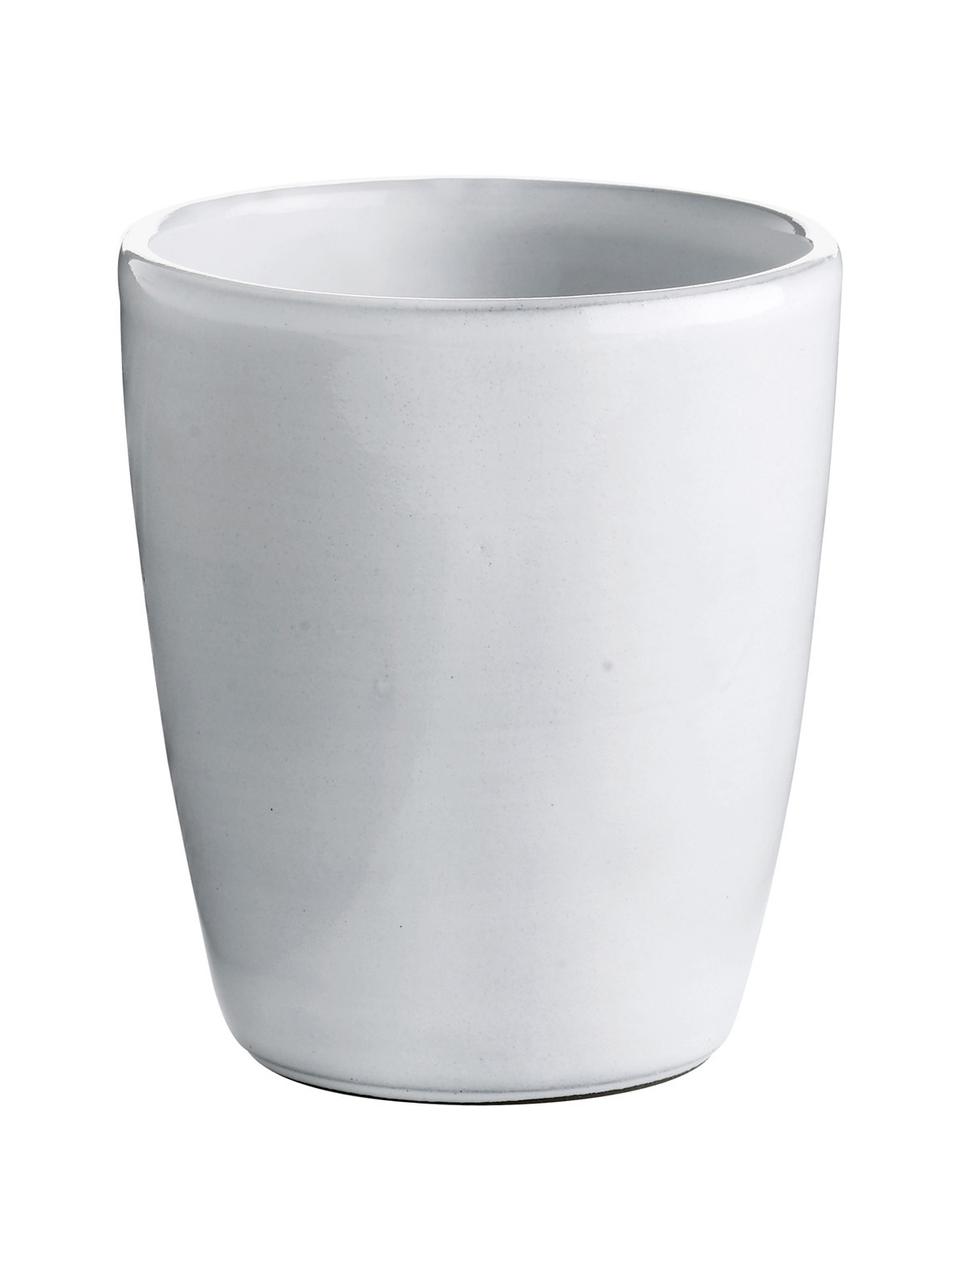 Keramik-Becher Haze in Weiss, 2 Stück, Keramik, glasiert, Weiss, Grau, Ø 10 x H 11 cm